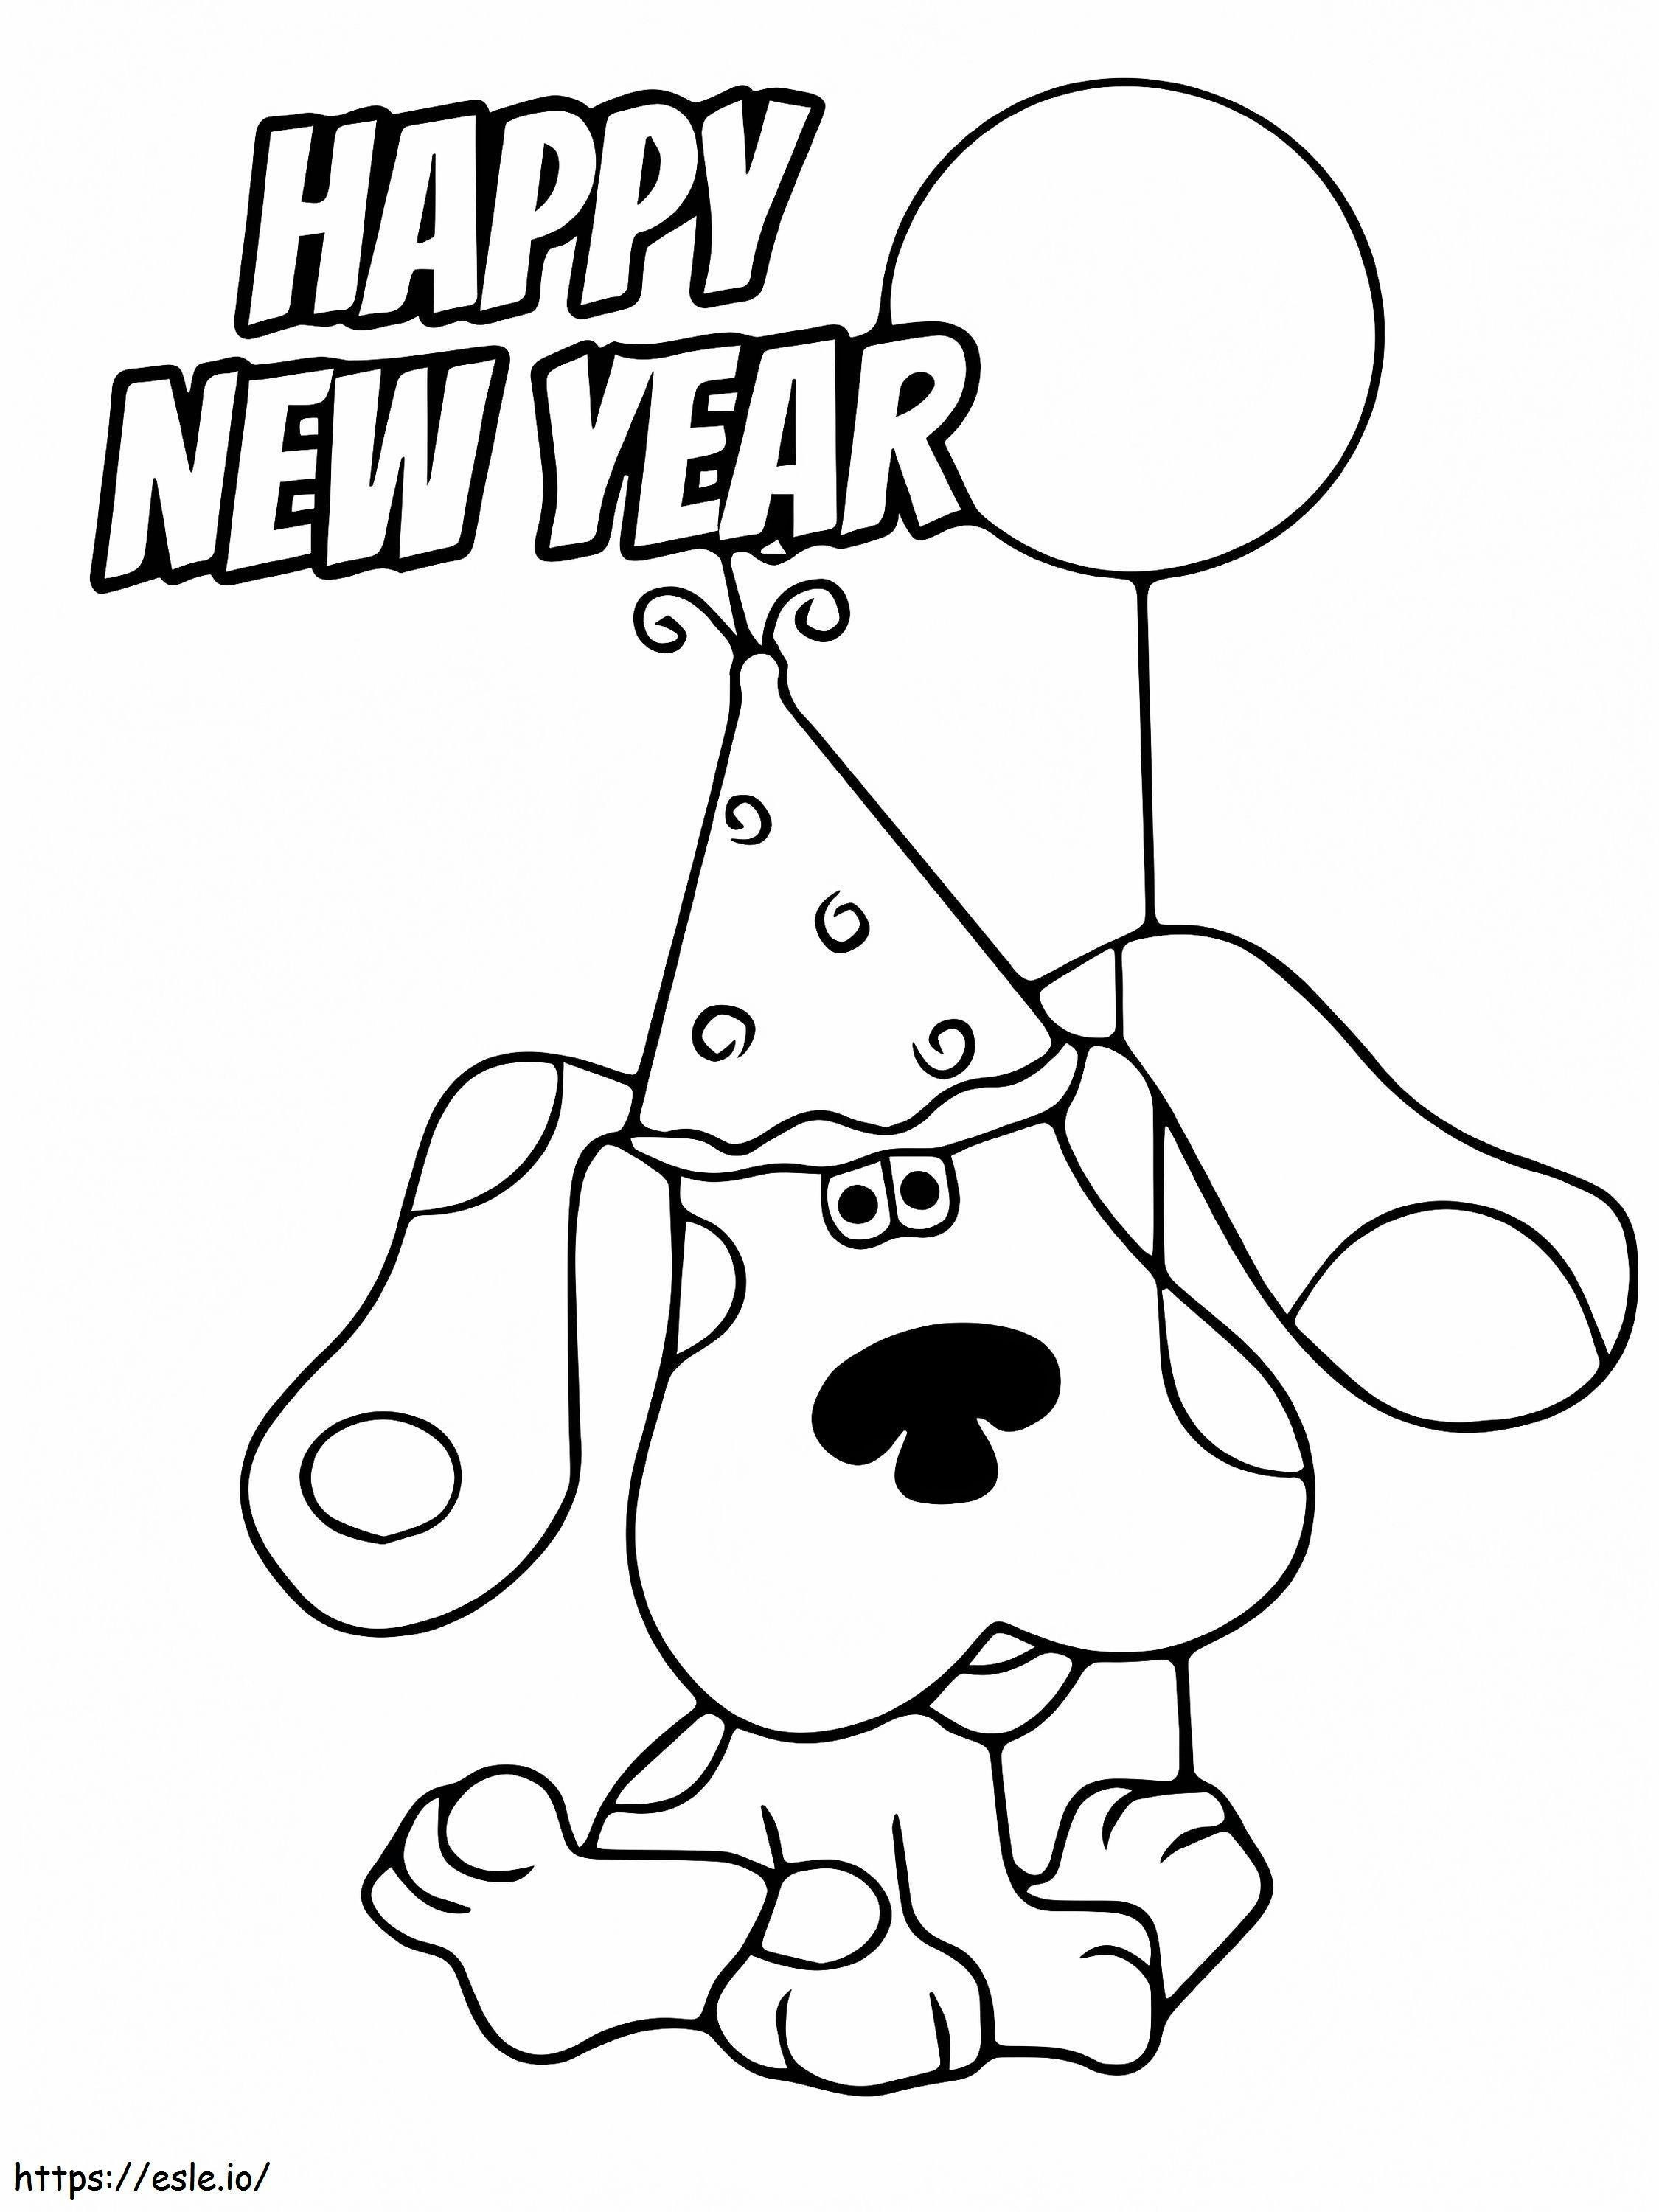 Frohes Neues Jahr, Mit, Hund, Design, Ausmalbilder ausmalbilder